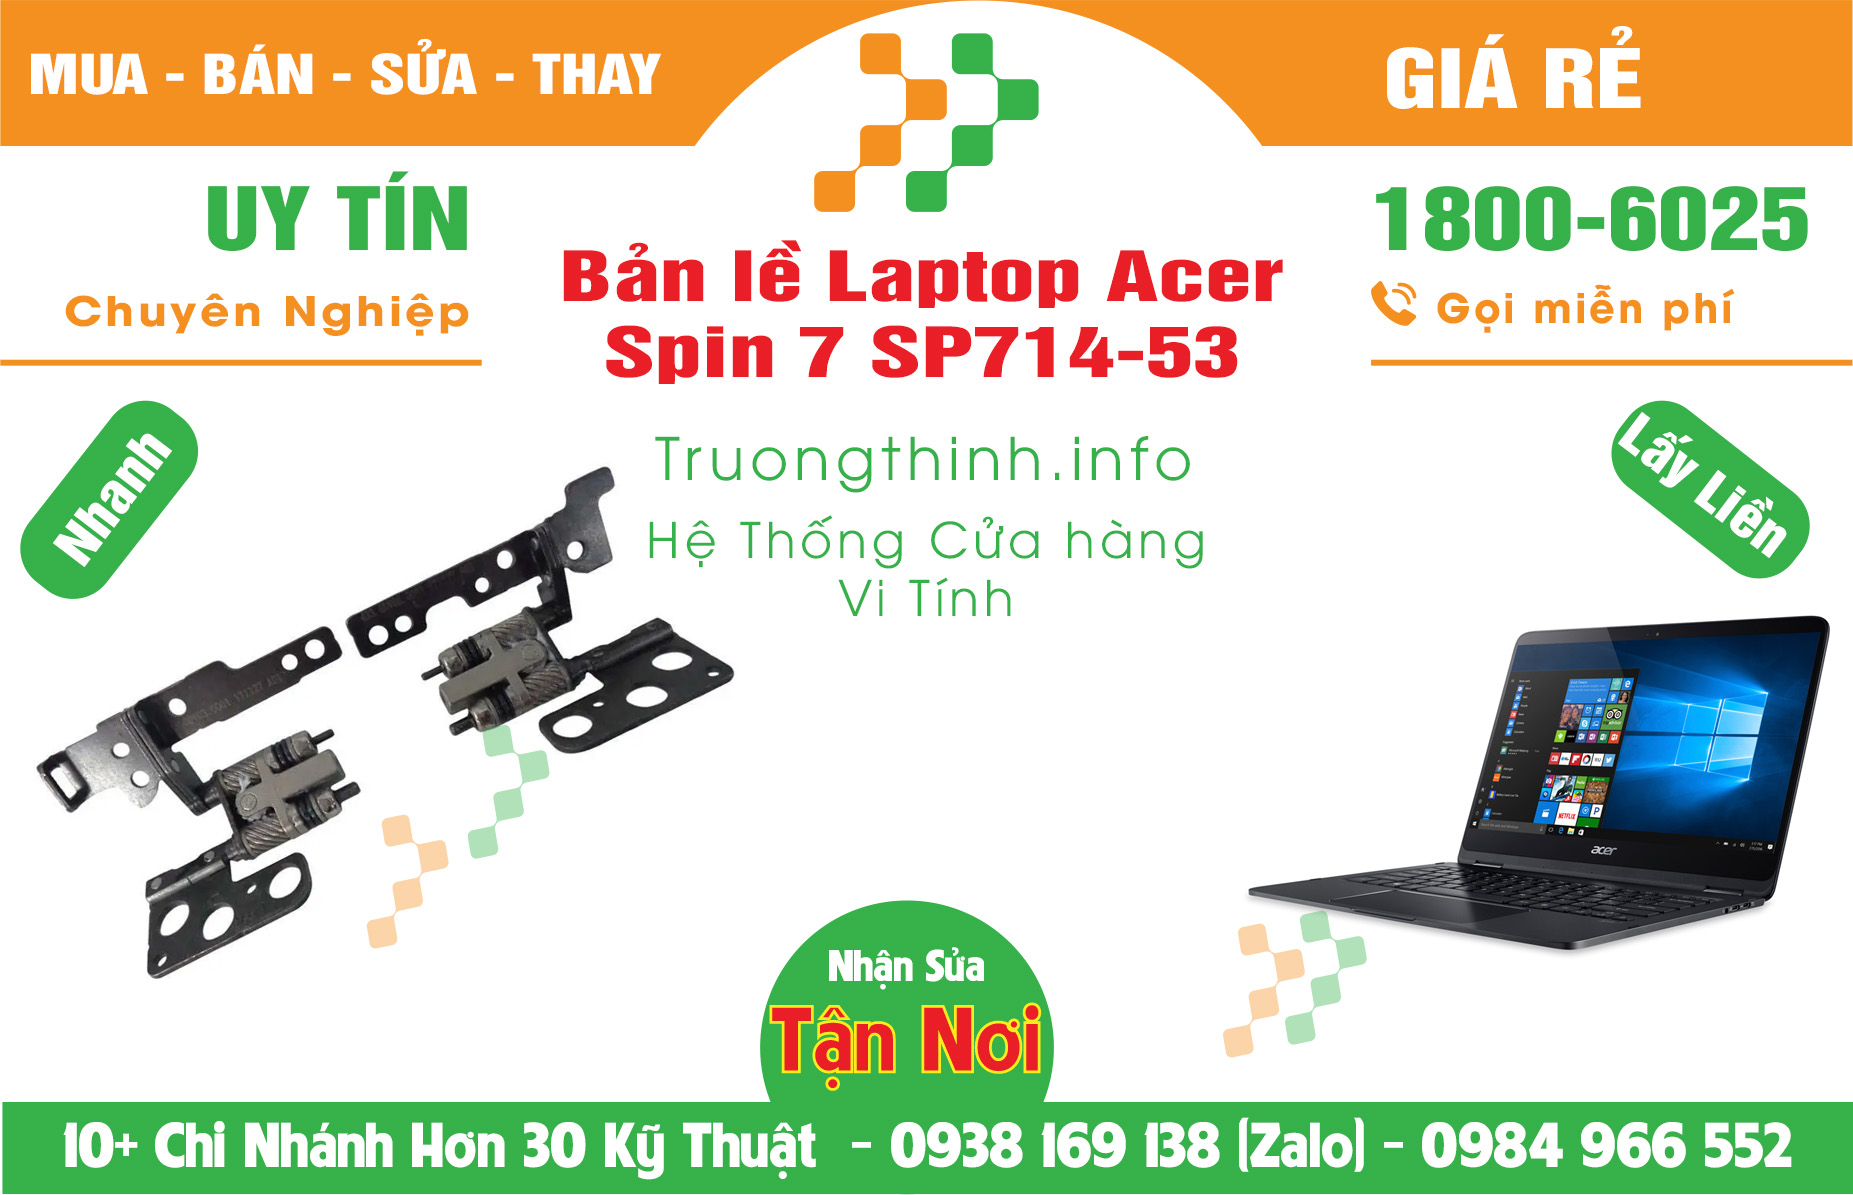 Mua Bán Bản lề Laptop Acer Spin 7 SP714-53 Giá Rẻ | Máy Tính Trường Thịnh Giá Rẻ